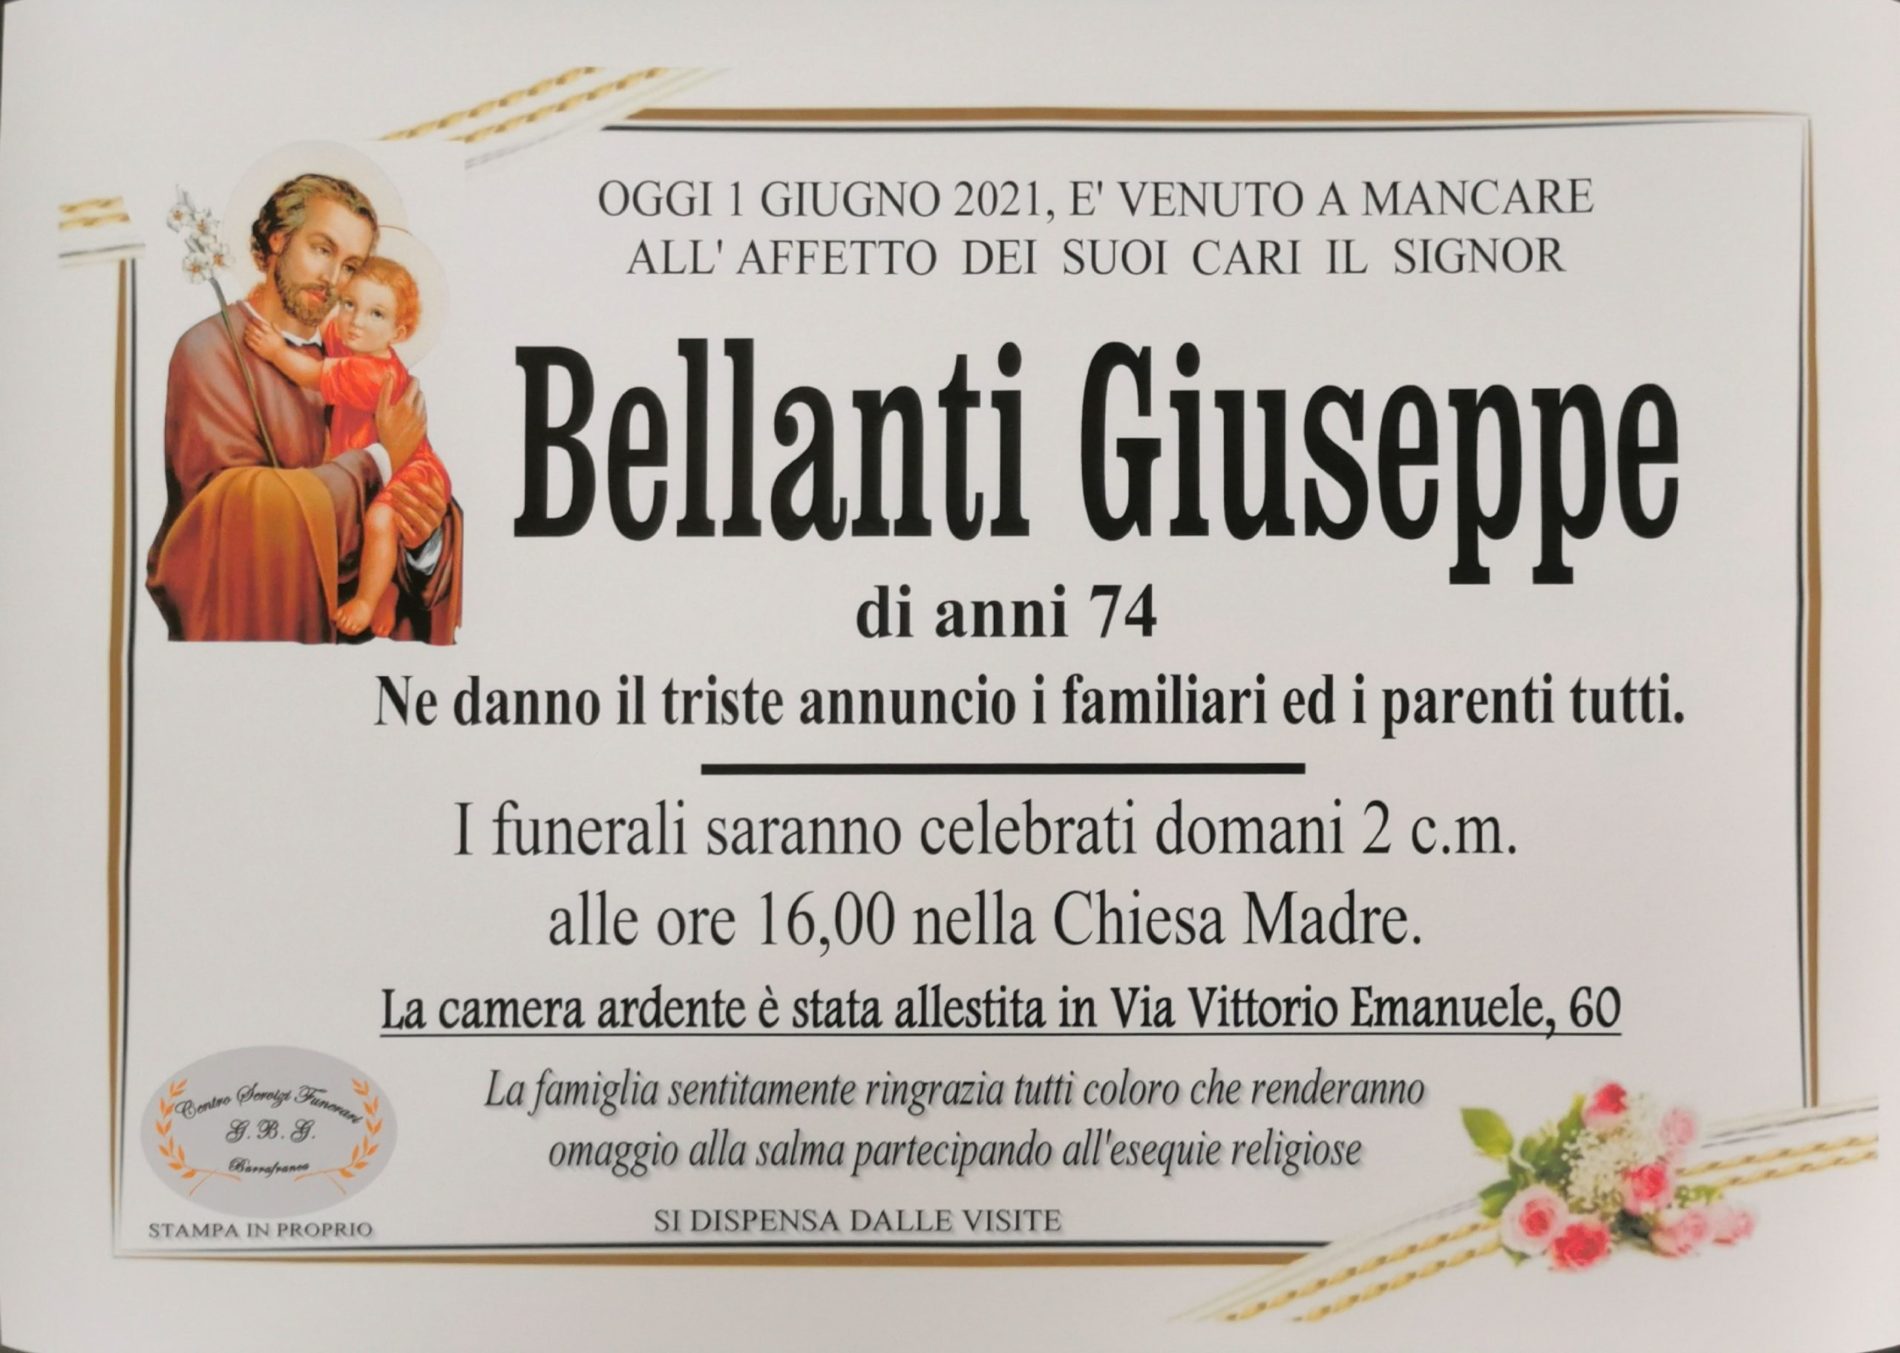 Annuncio servizi funerari agenzia G.B.G. sig. Bellanti Giuseppe di anni 74